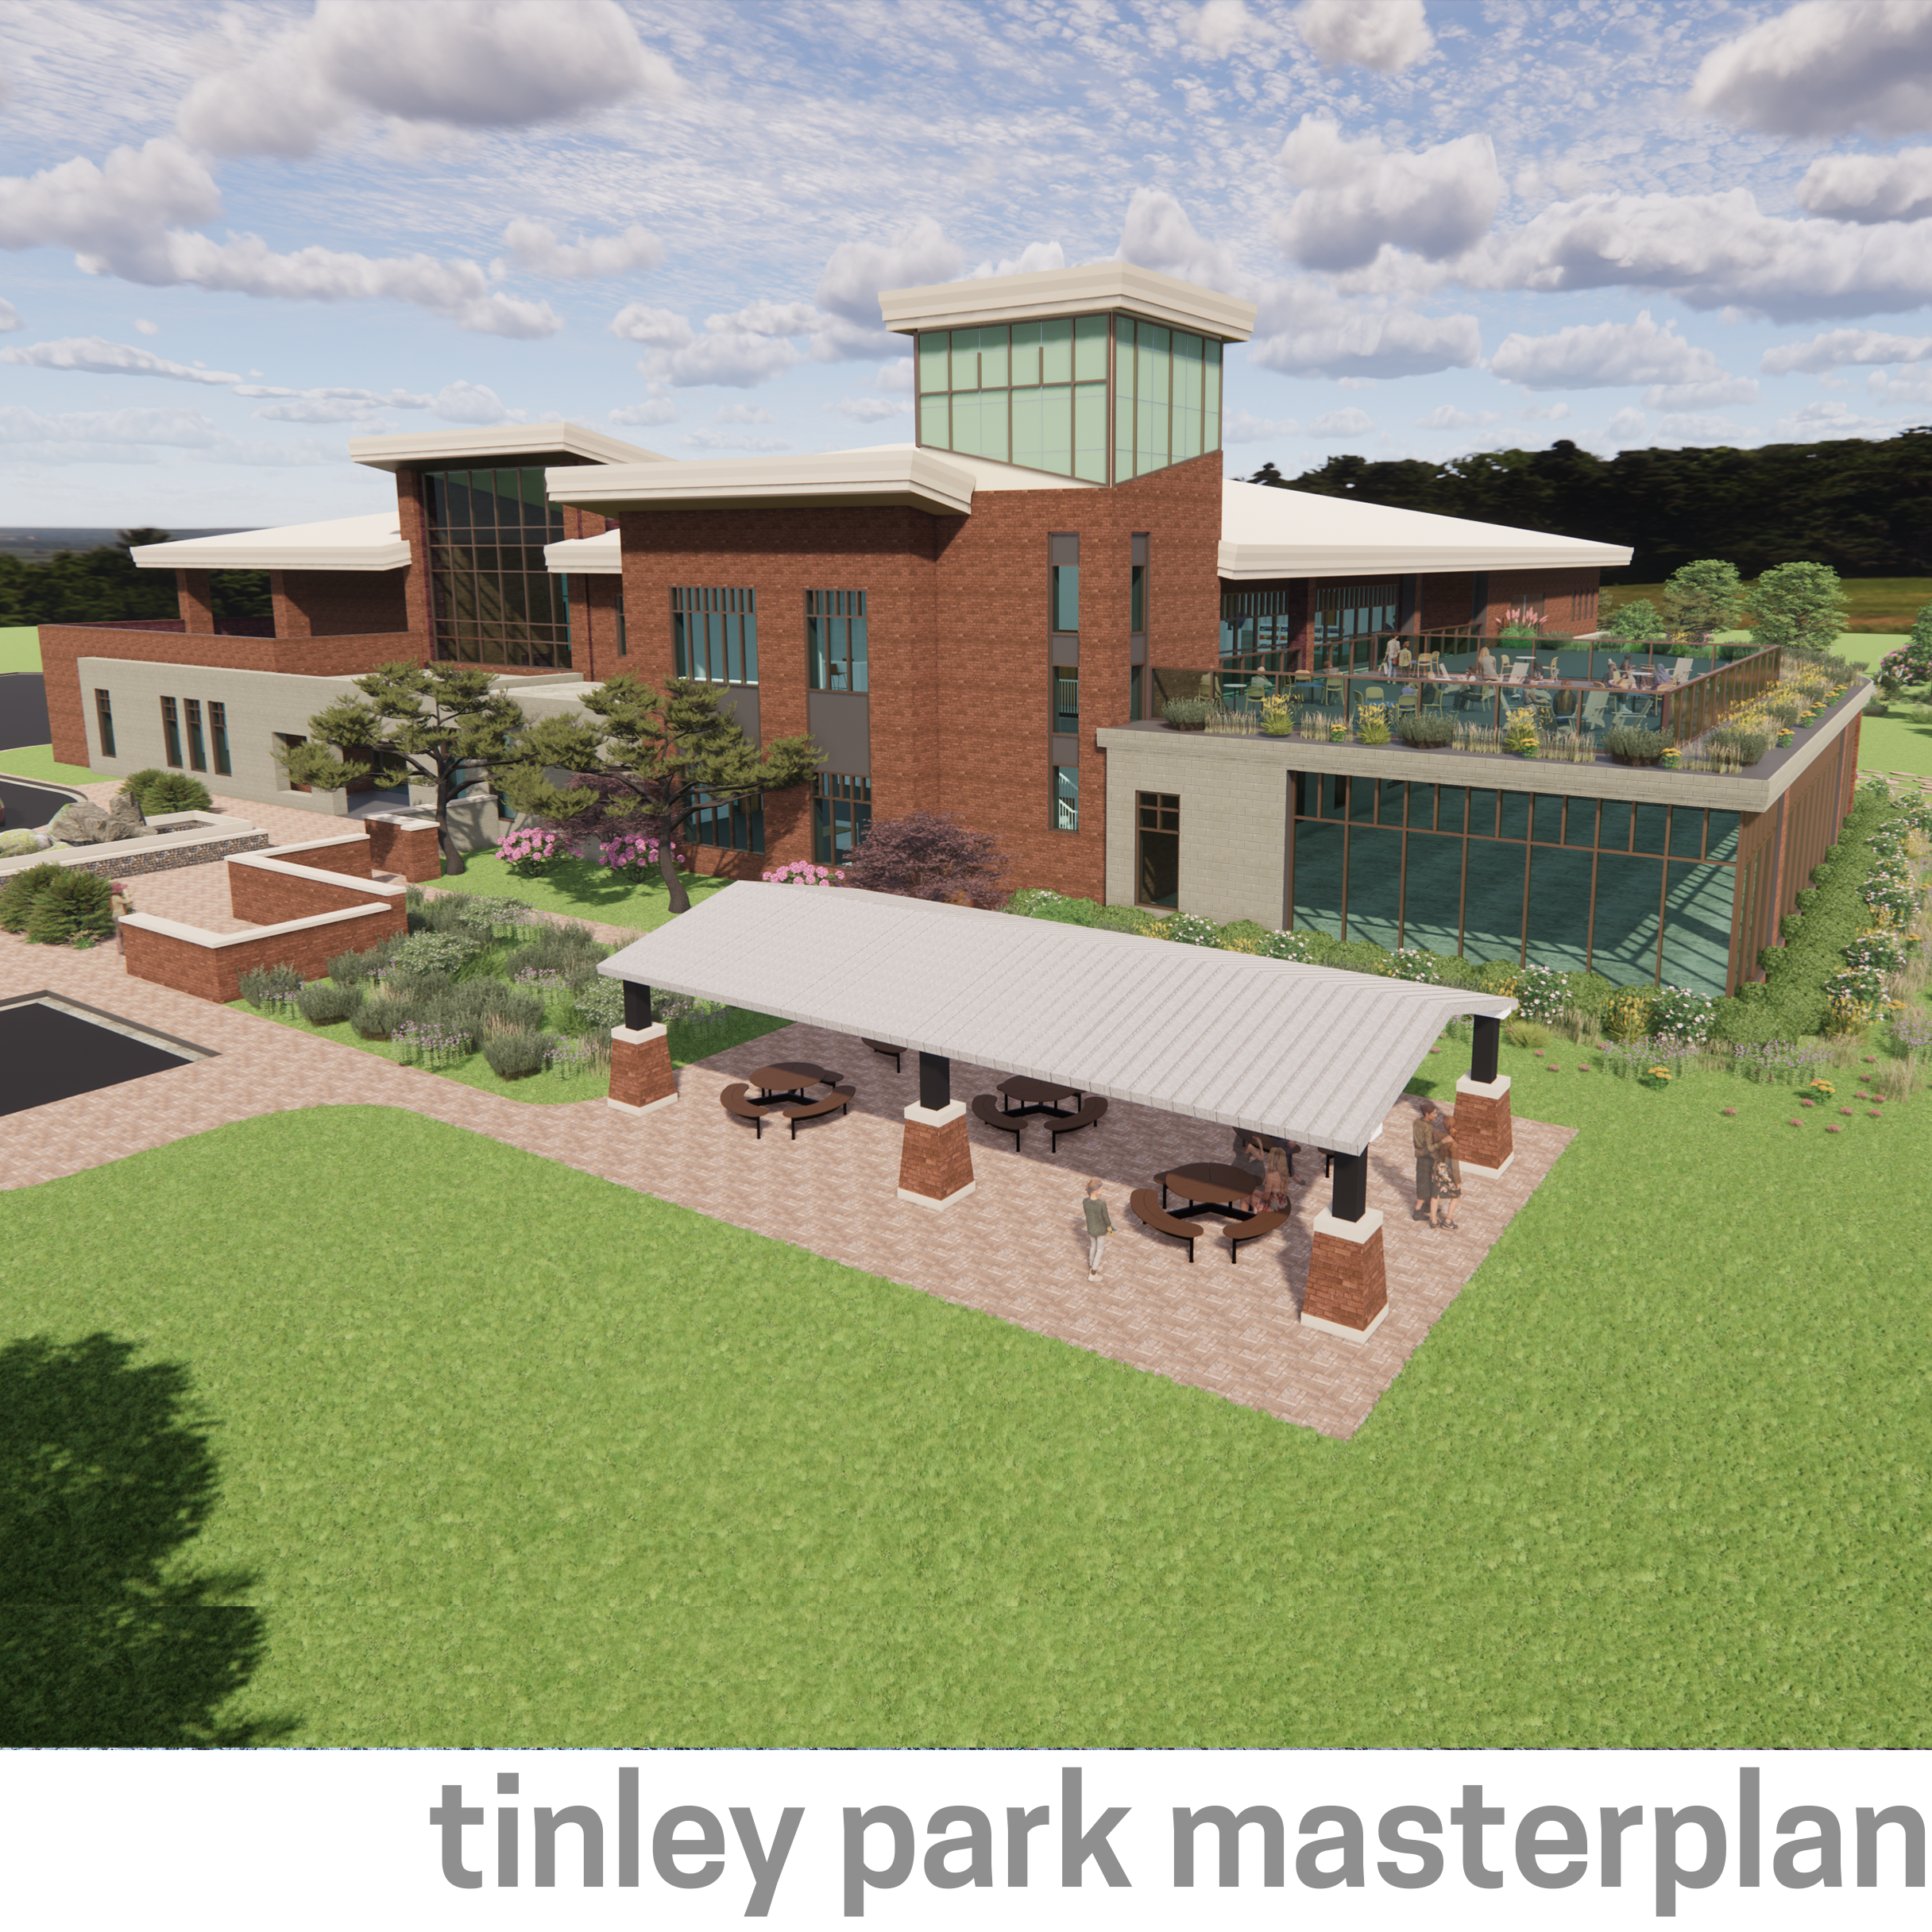 tinley park masterplan.png